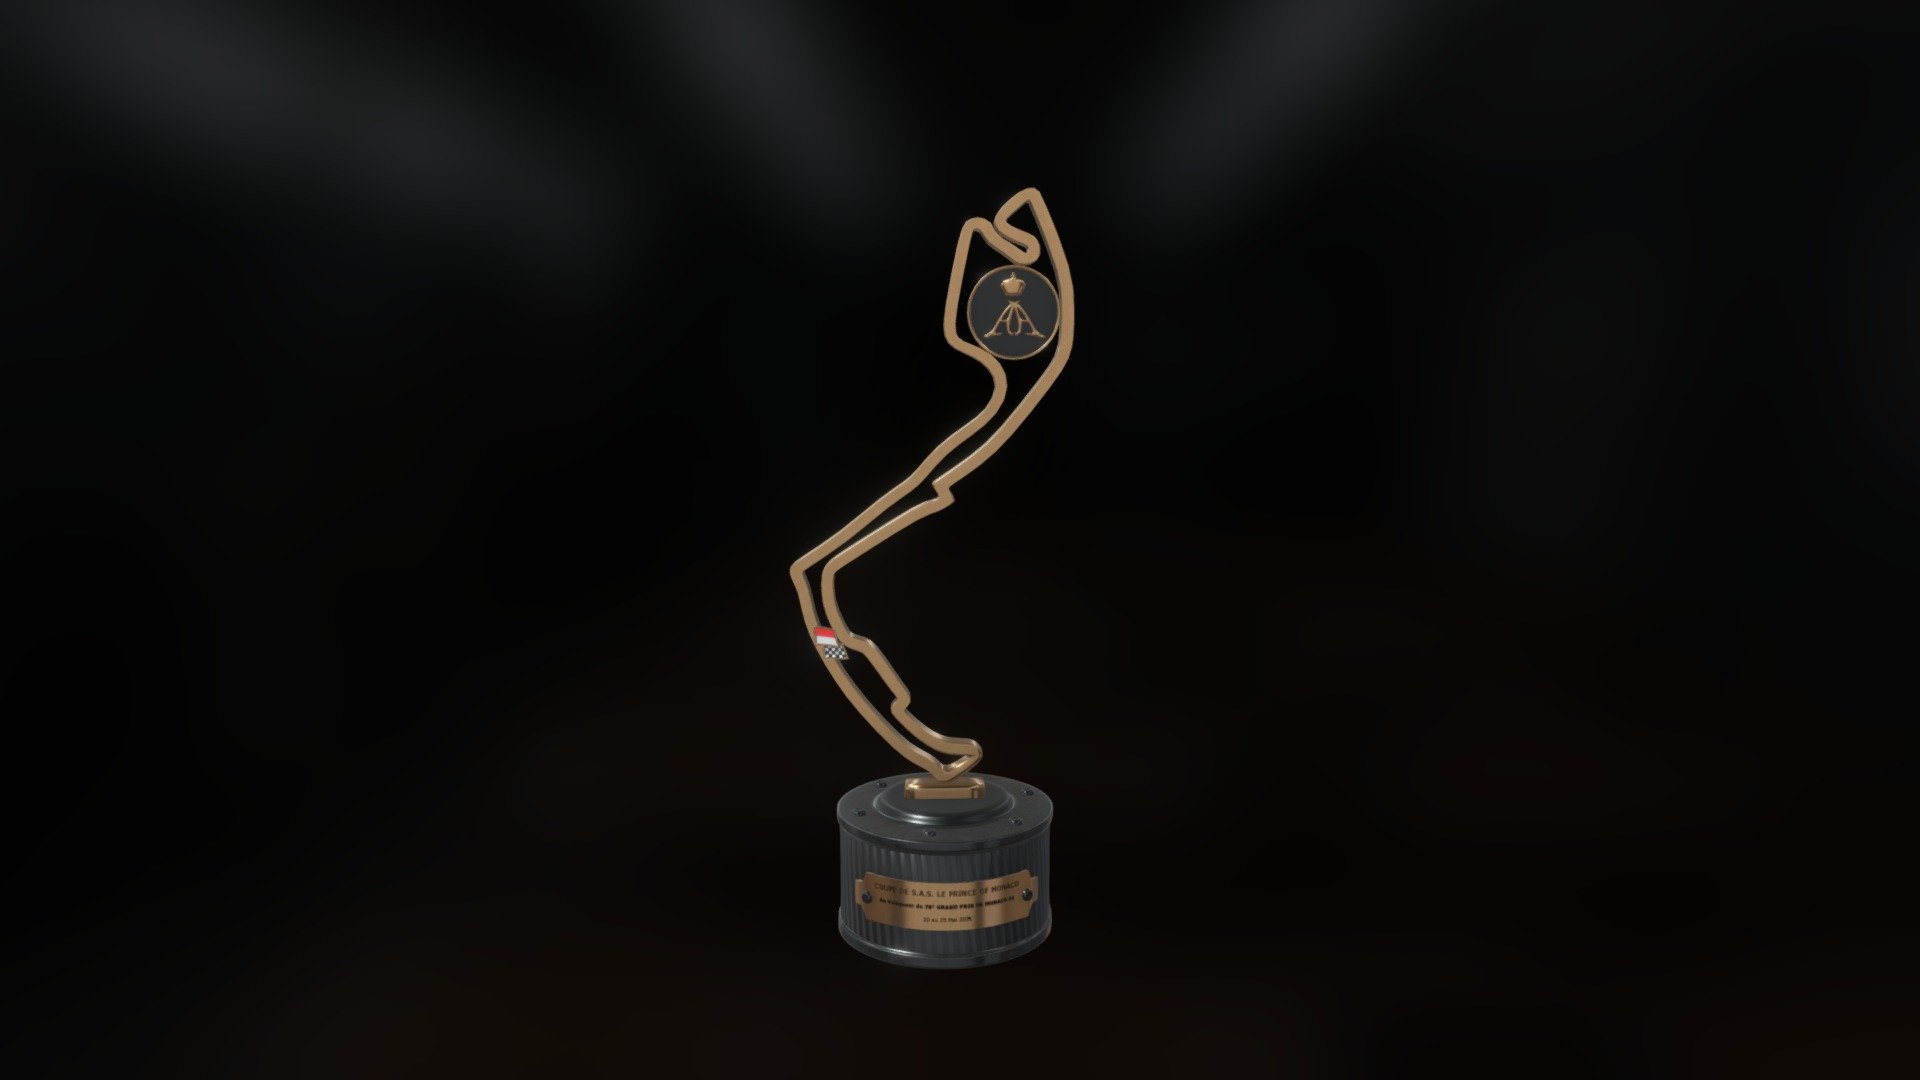 Monaco Grand Prix Trophy - Digital 3D : r/formula1